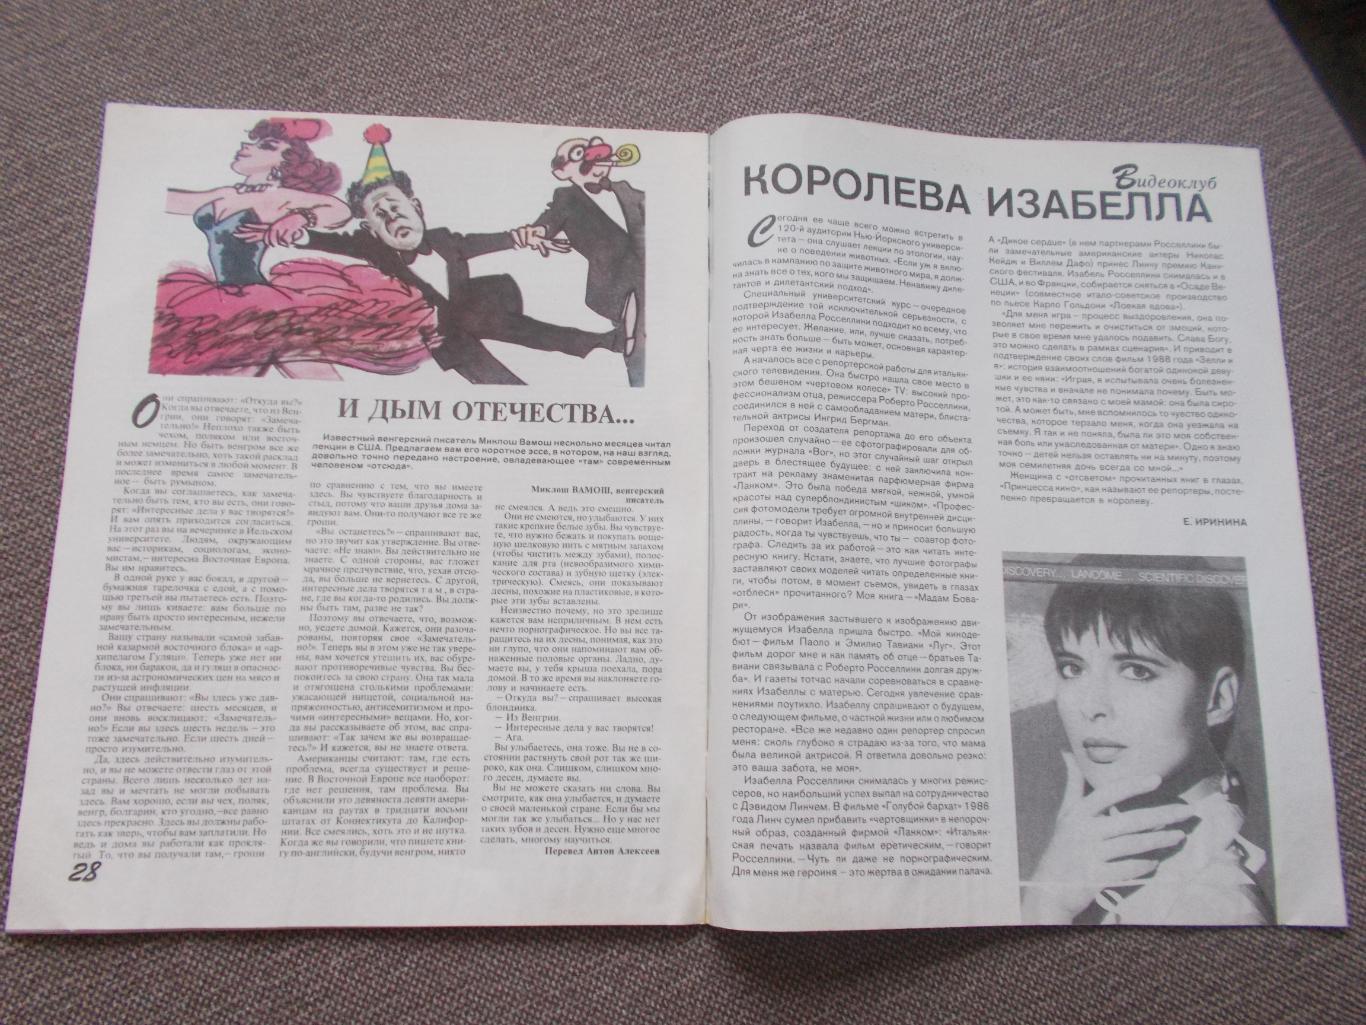 Журнал СССР :Ровесник№ 3 (март) 1991 г. (Молодежный музыкальный журнал) 4